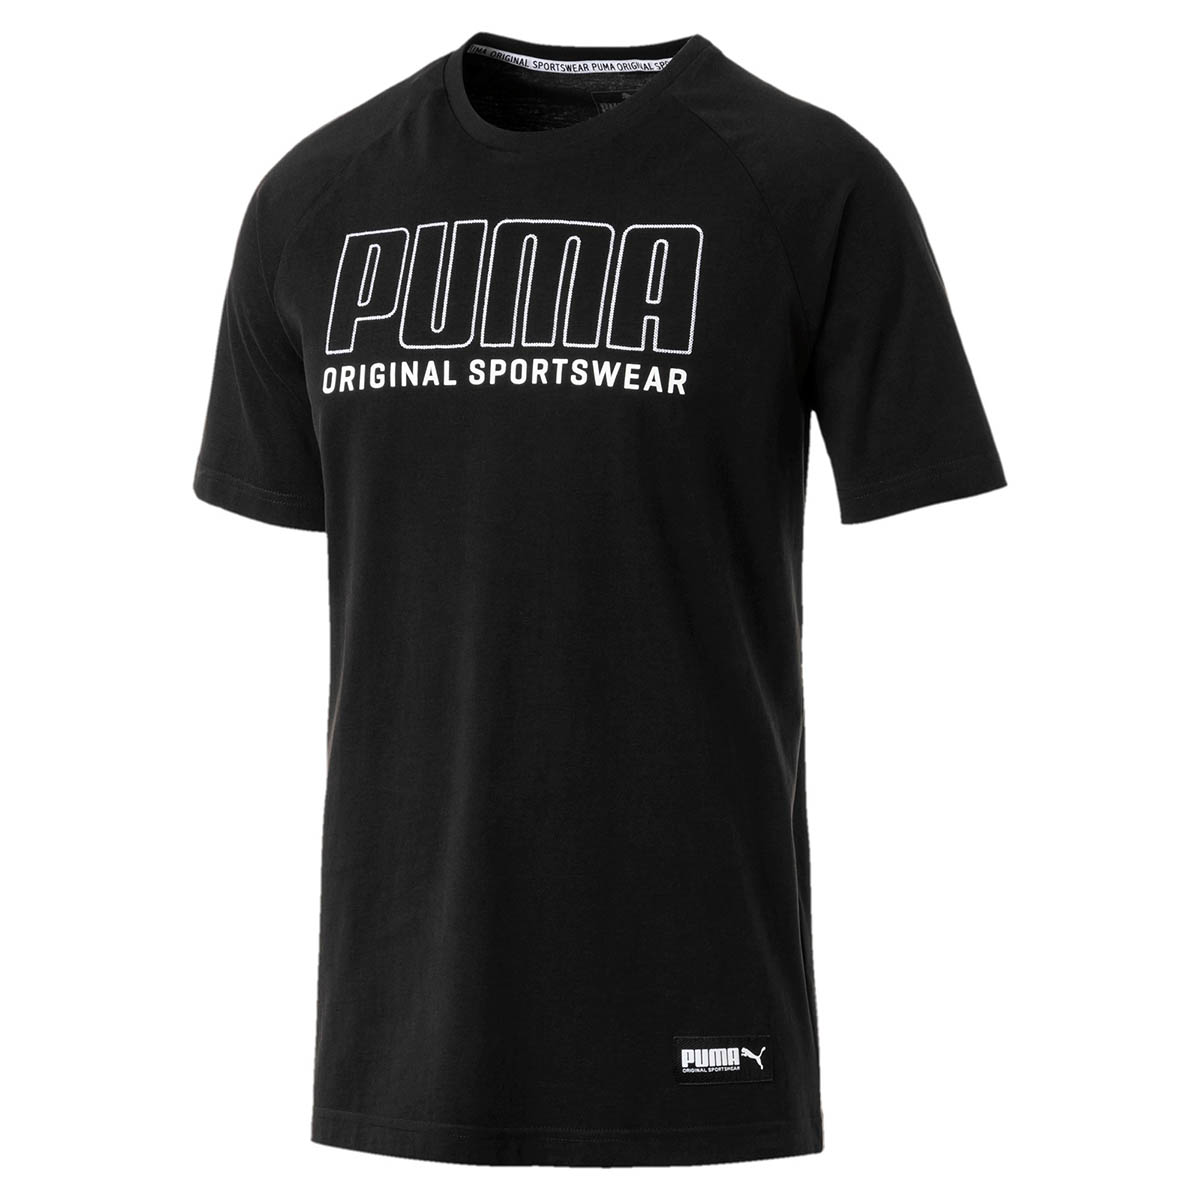 PUMA Athletics Graphic Tee Herren T-shirt Sportswear 855134 01 schwarz